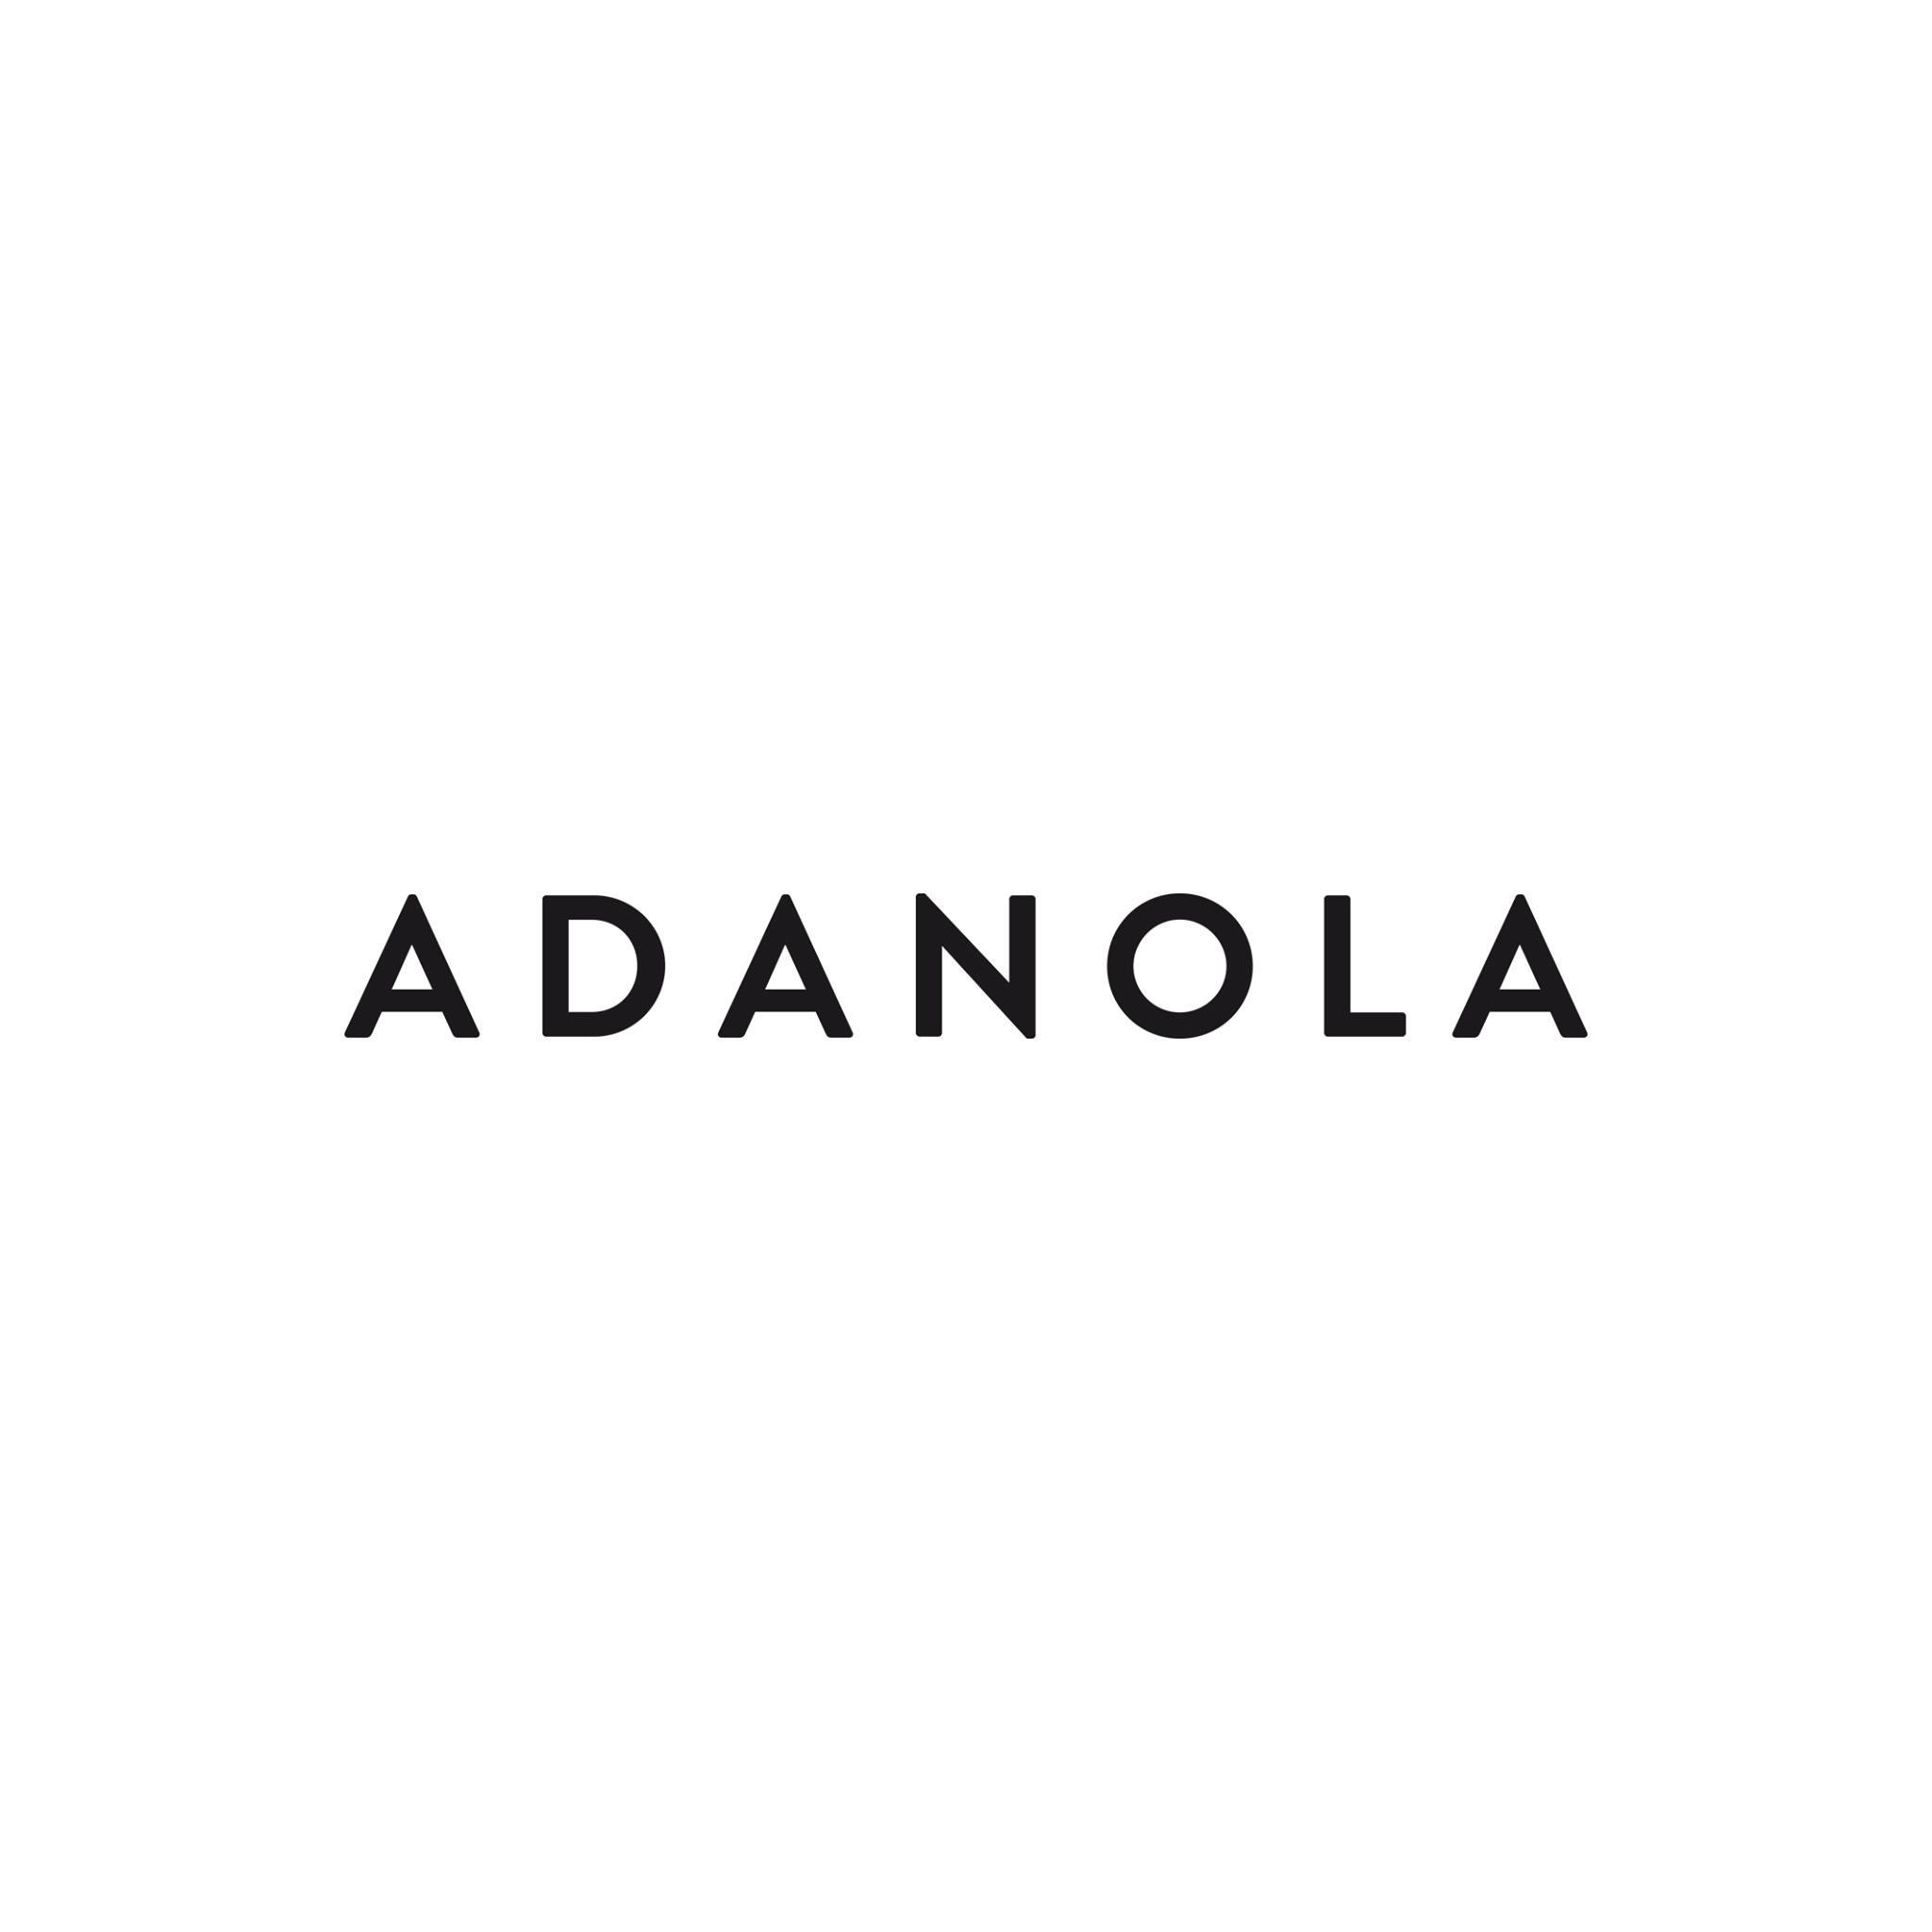 Adanola Coupons & Promo Codes